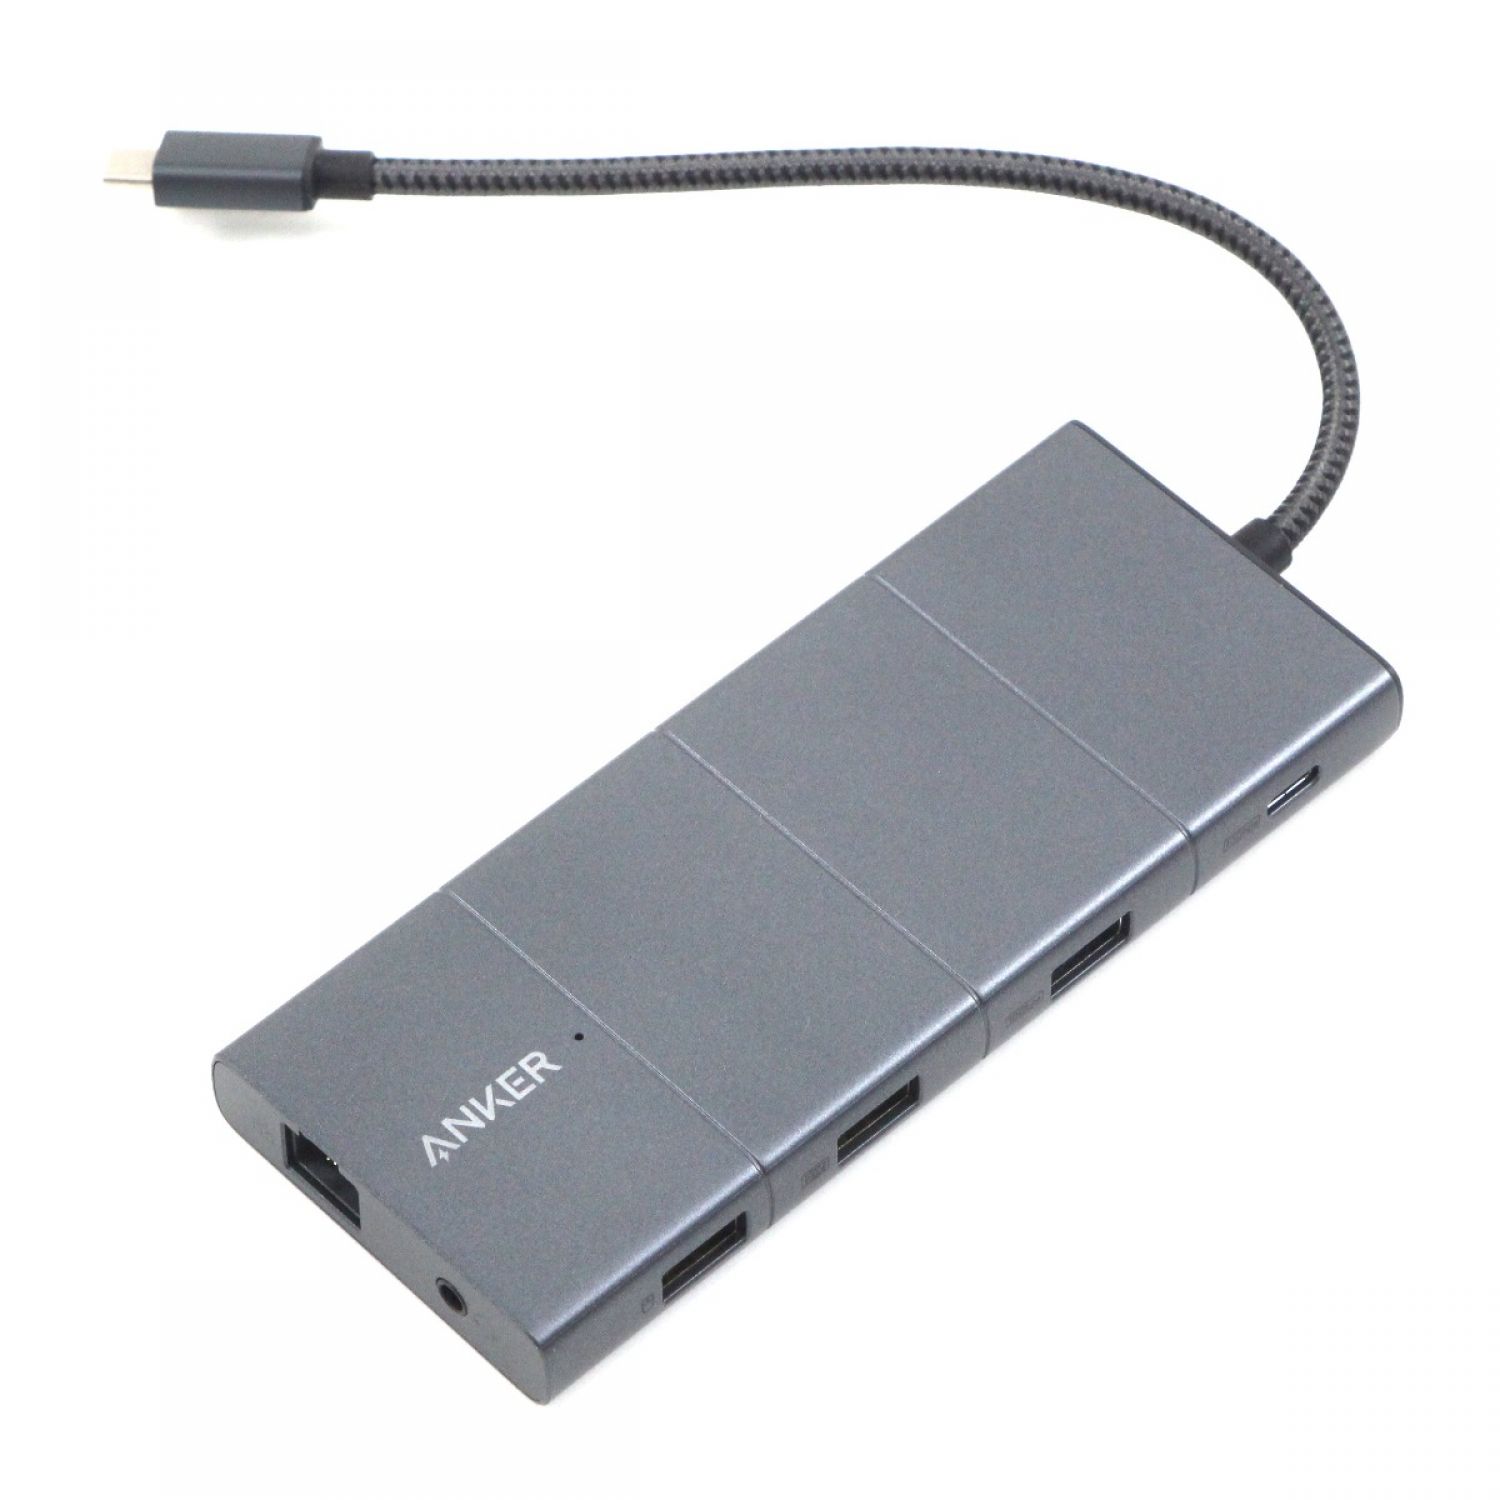 美品 Anker 565 USB-Cハブ 11 in 1